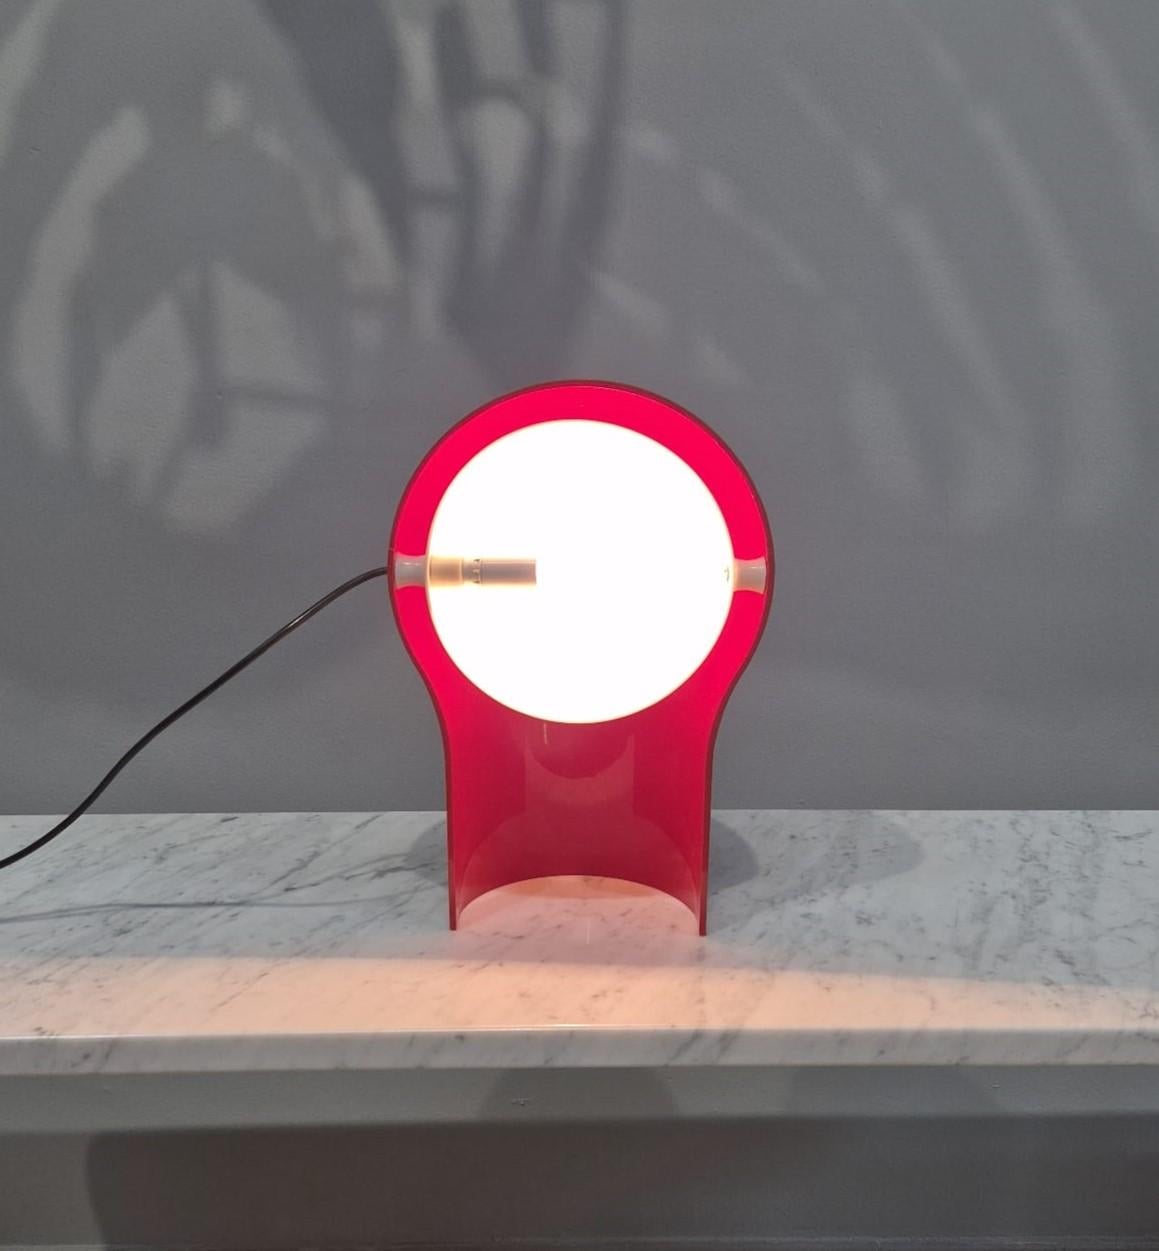 Lampe de table Telegono vintage, conçue par le célèbre Vico Magistretti pour Artemide en 1969. La base est réalisée en plastique rose et le paralume en plastique blanc.
Il paralume è, inoltre, orientabile e nasconde la lampadina donando una luce